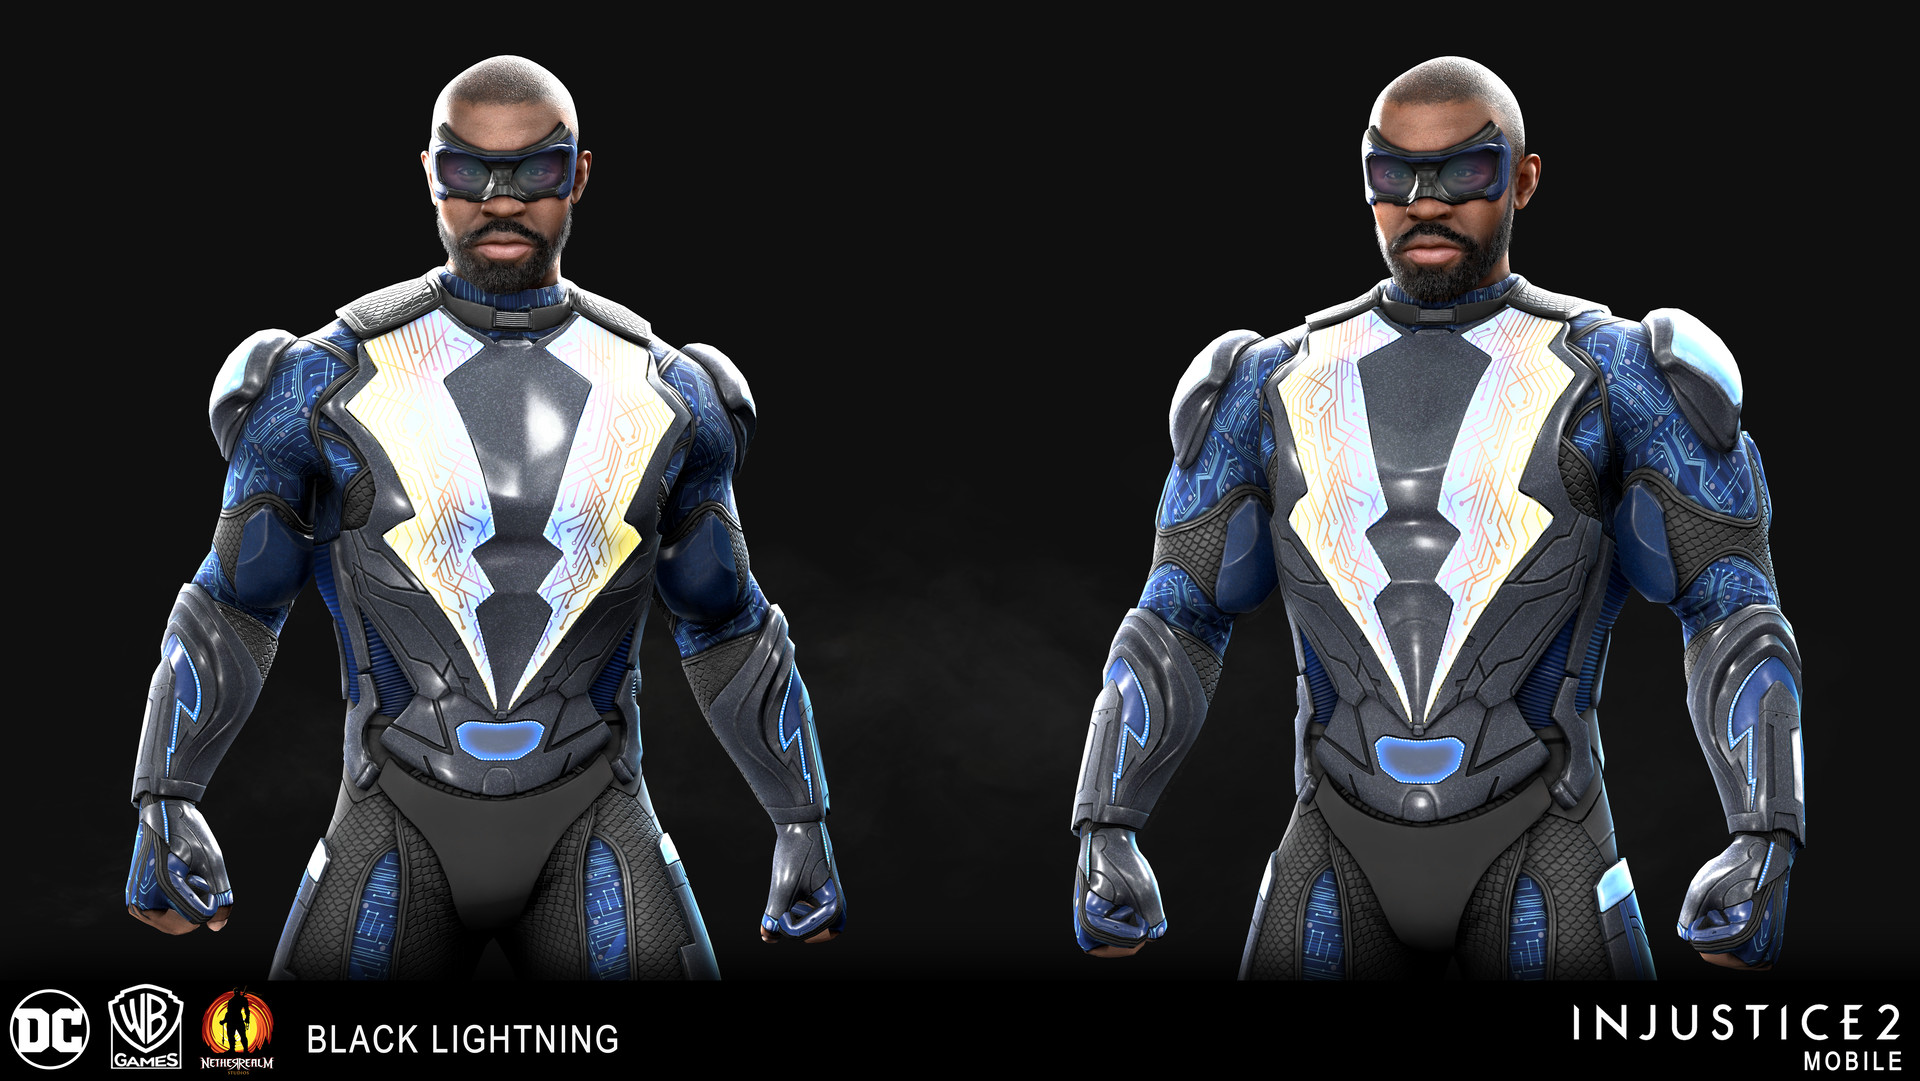 ArtStation - Black Lightning CW Head - Injustice 2 Mobile